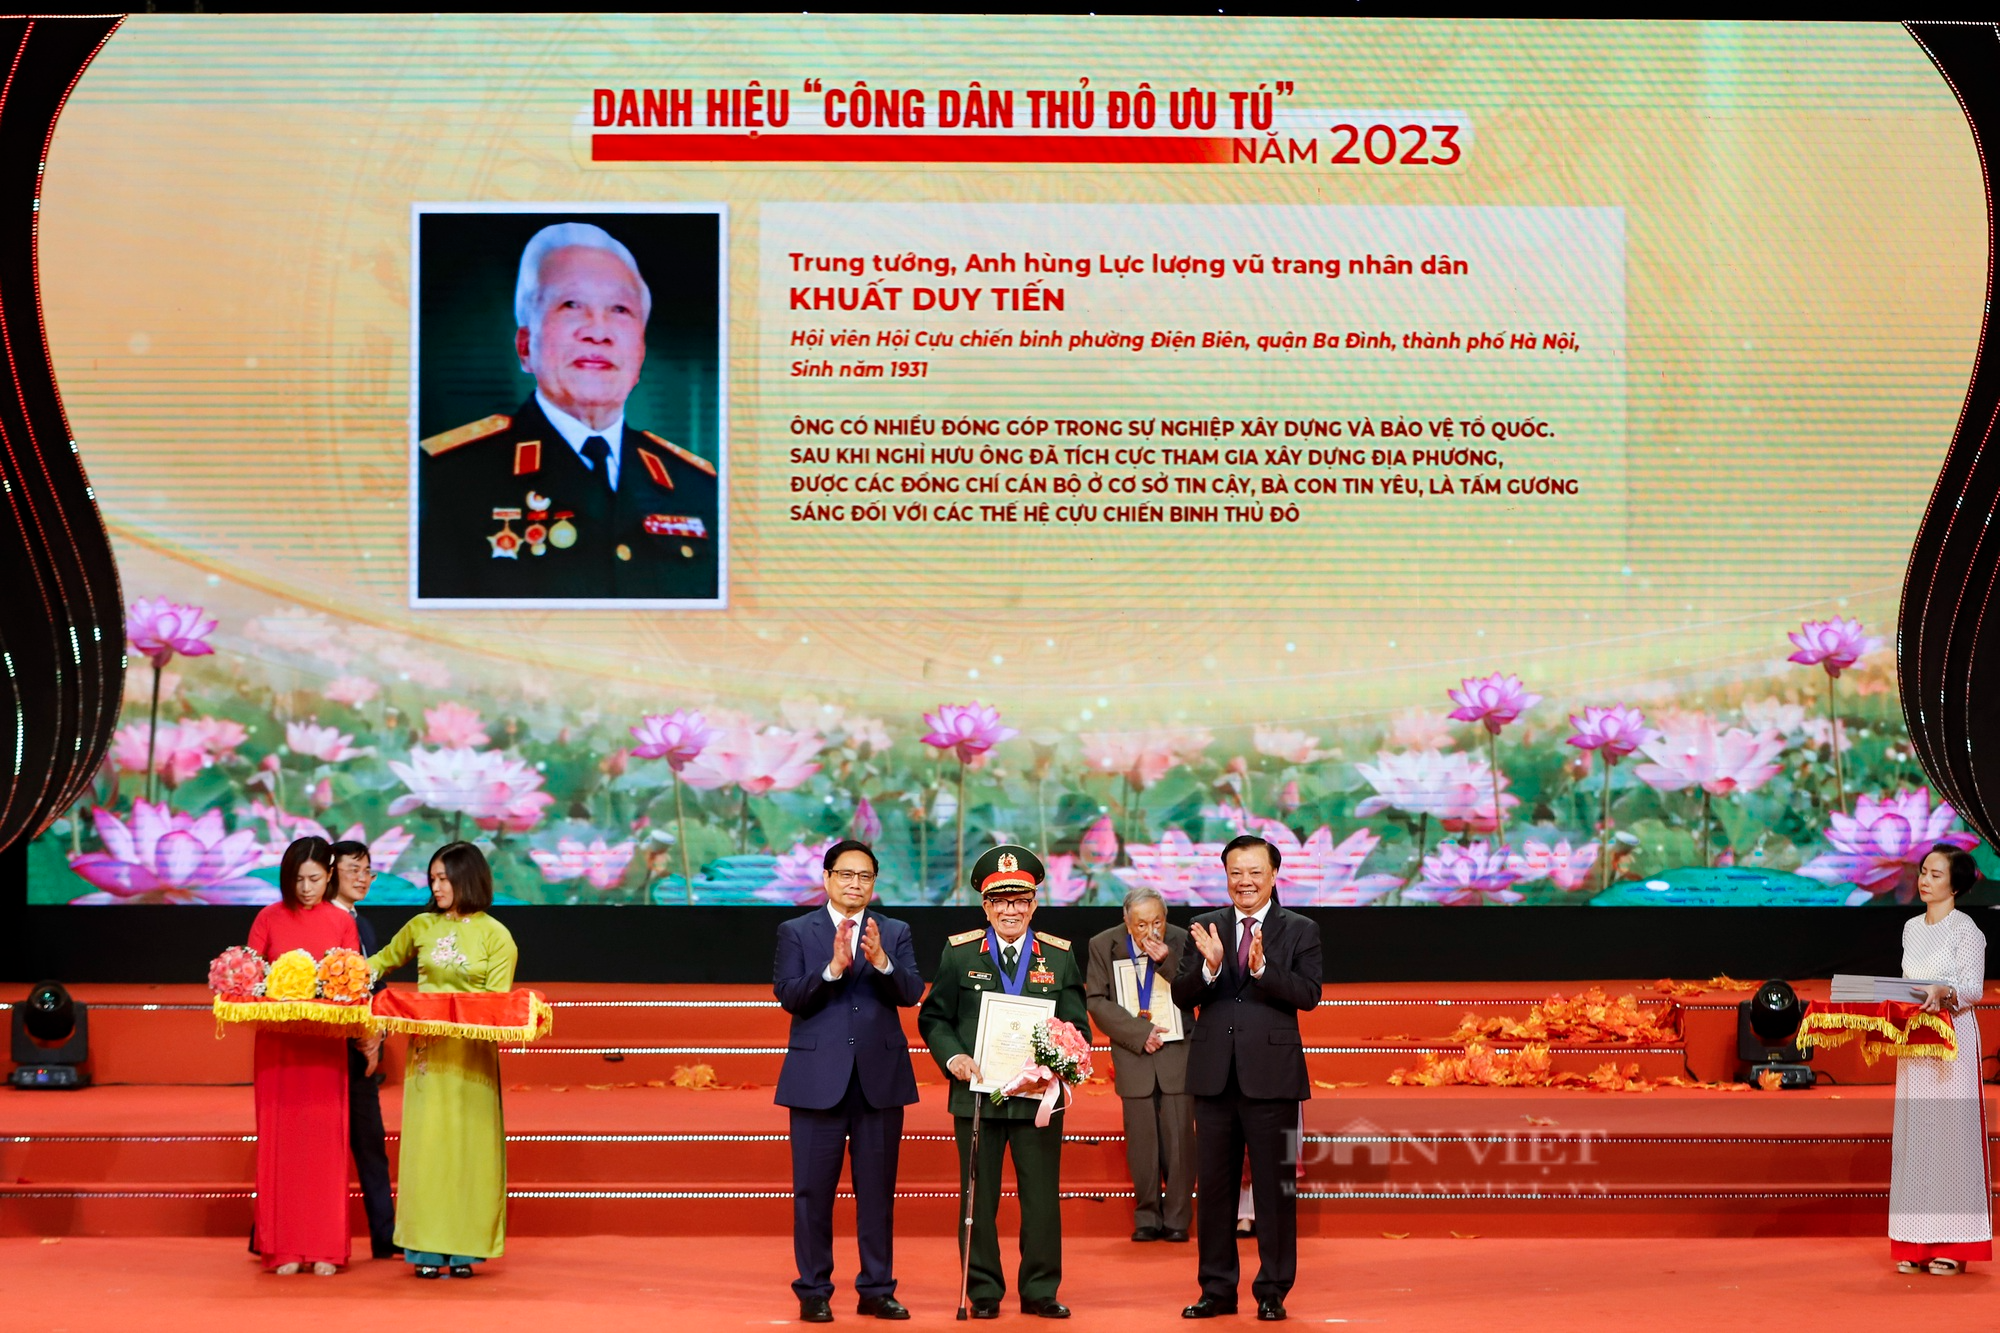 Hình ảnh Thủ tướng Phạm Minh Chính dự Hội nghị vinh danh Công dân Thủ đô Ưu tú năm 2023 - Ảnh 6.